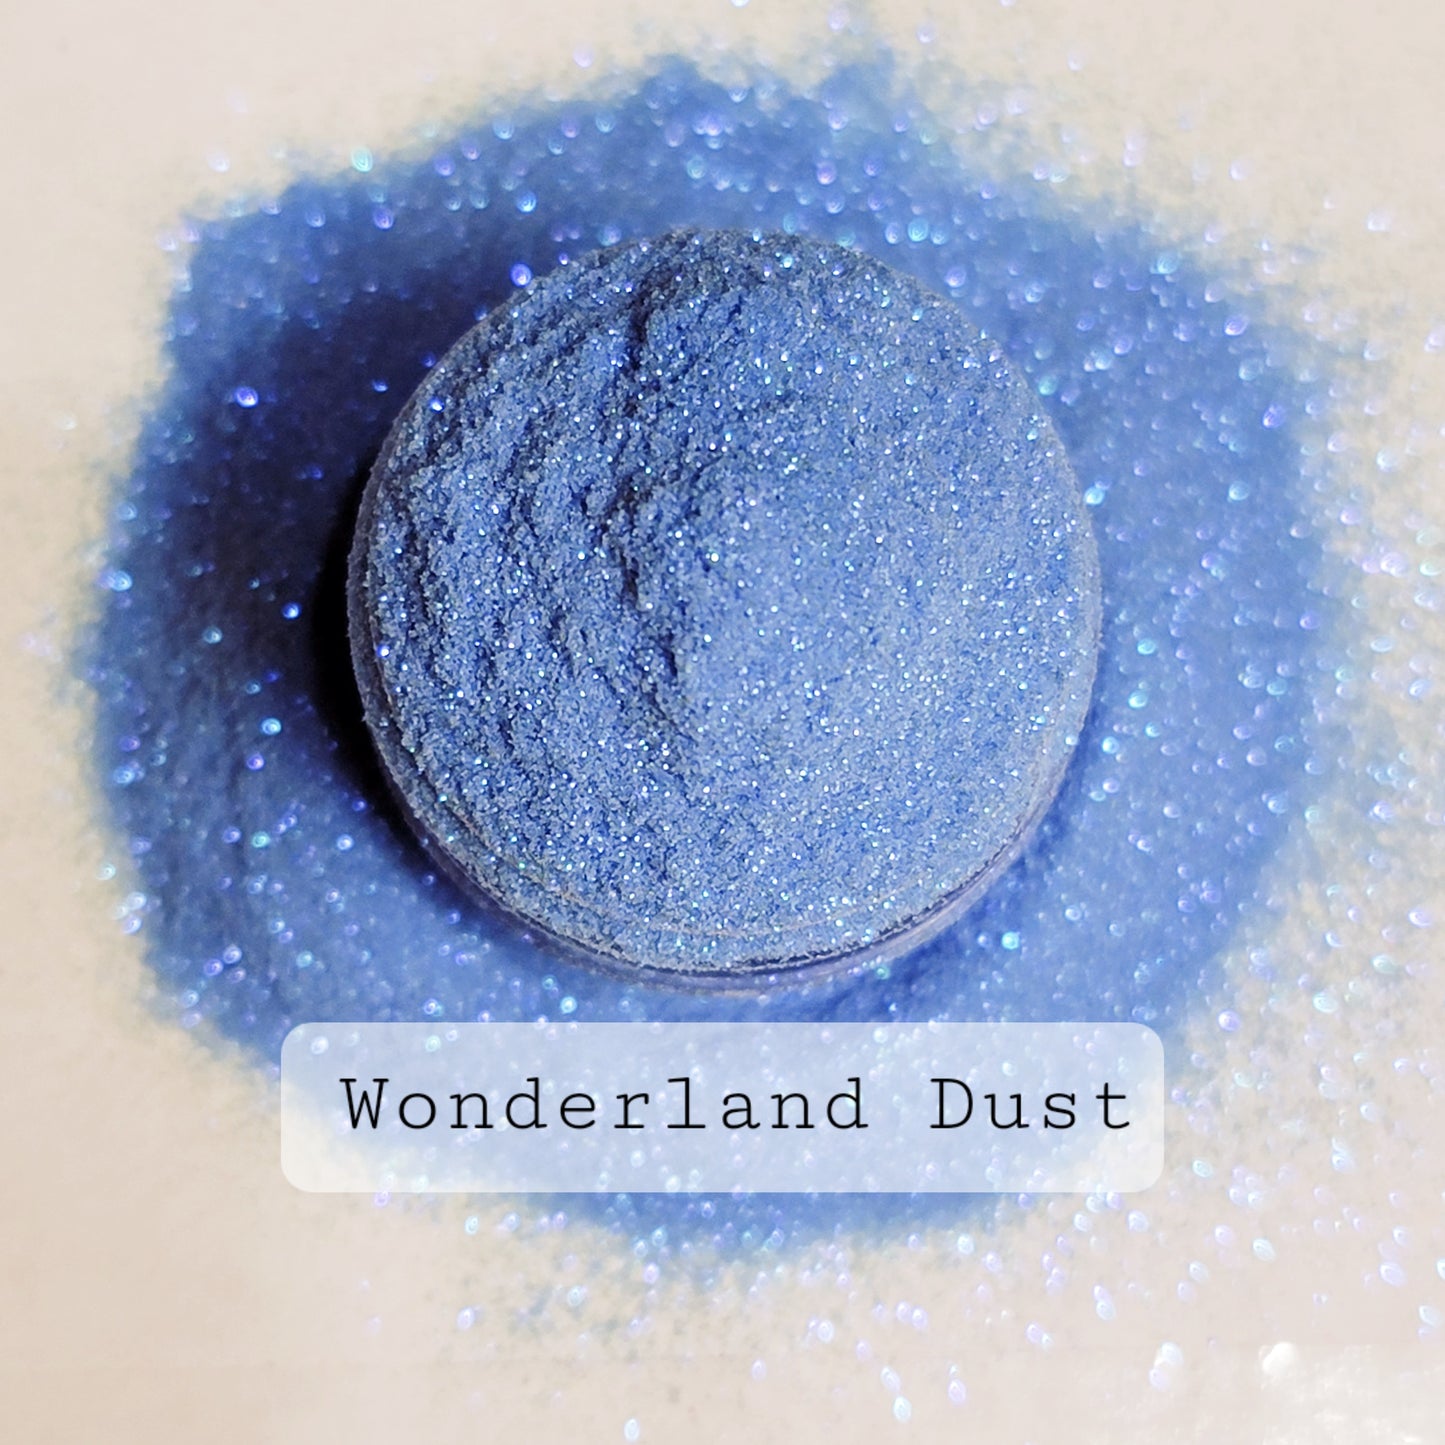 Wonderland Dust